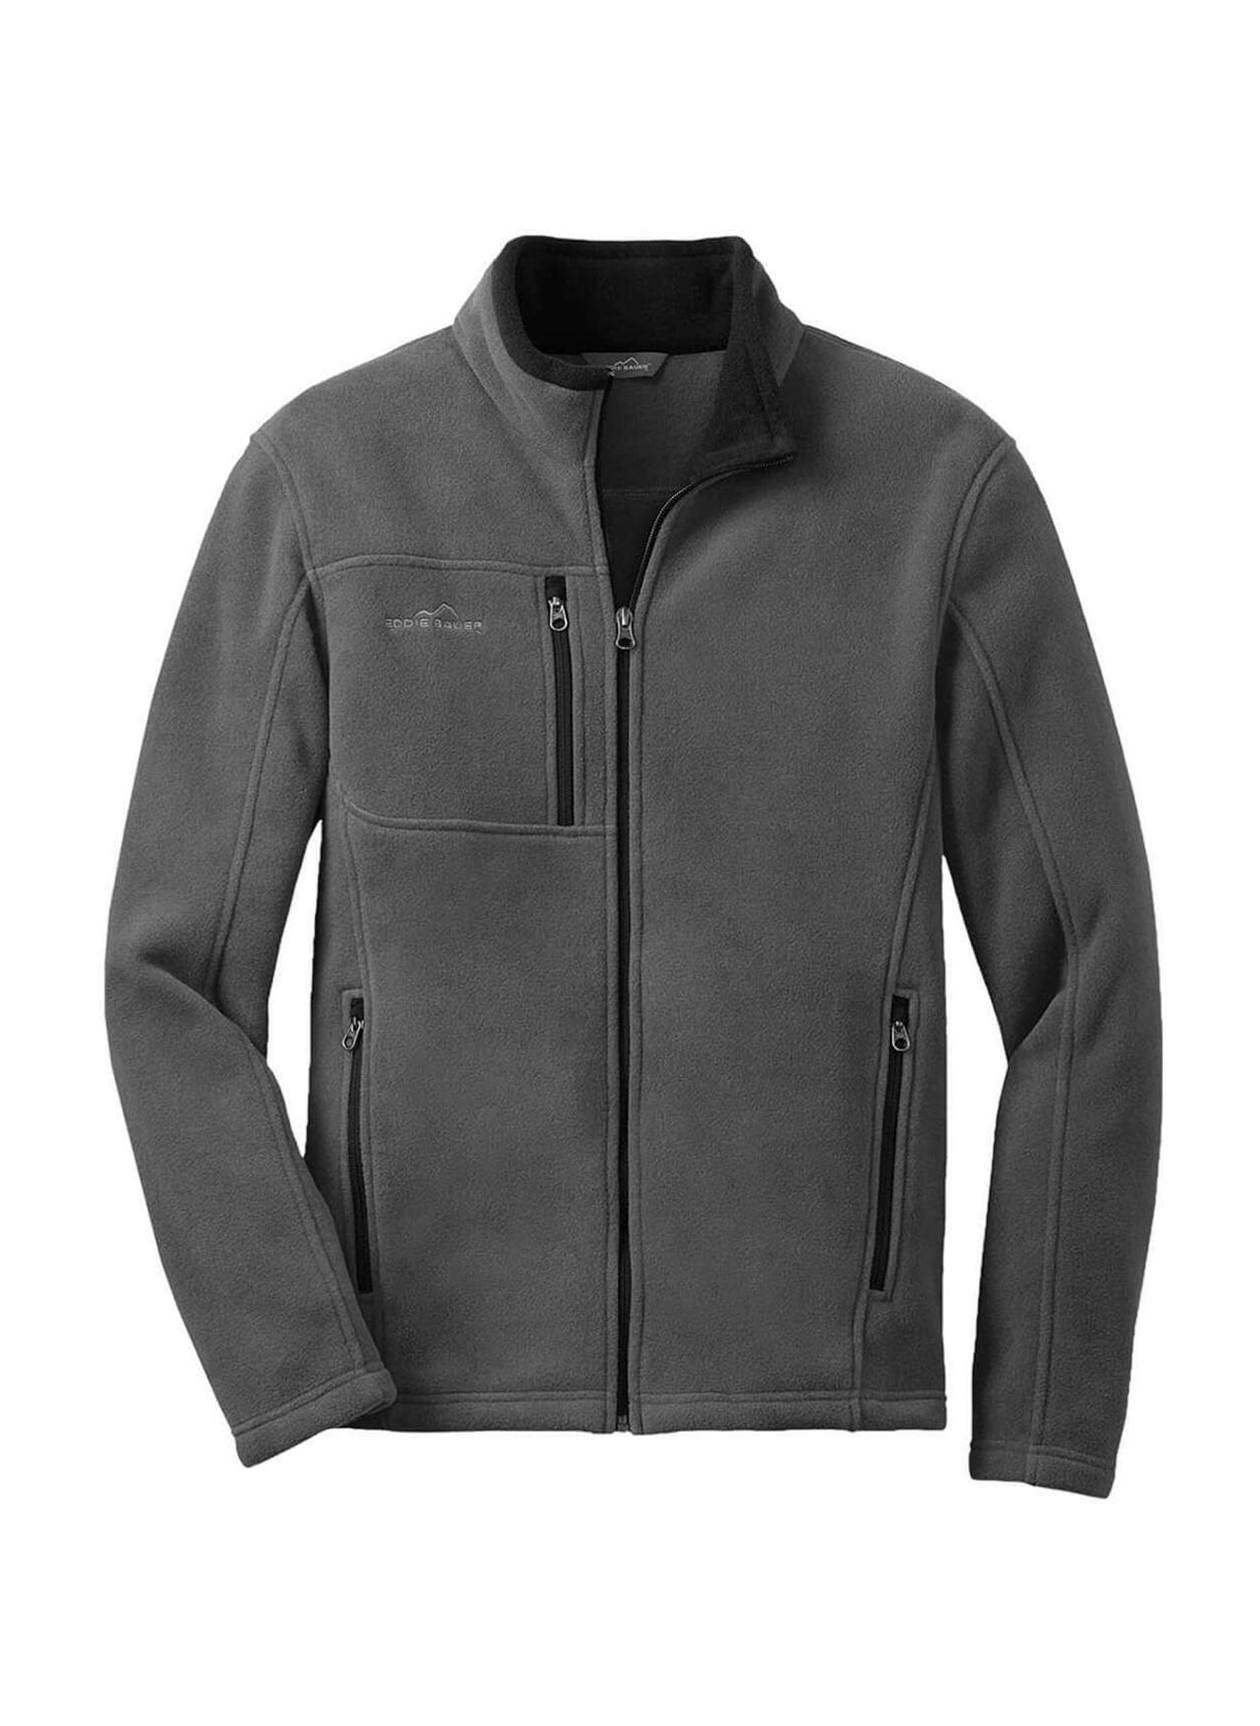 Eddie Bauer Men's Grey Steel Fleece Jacket